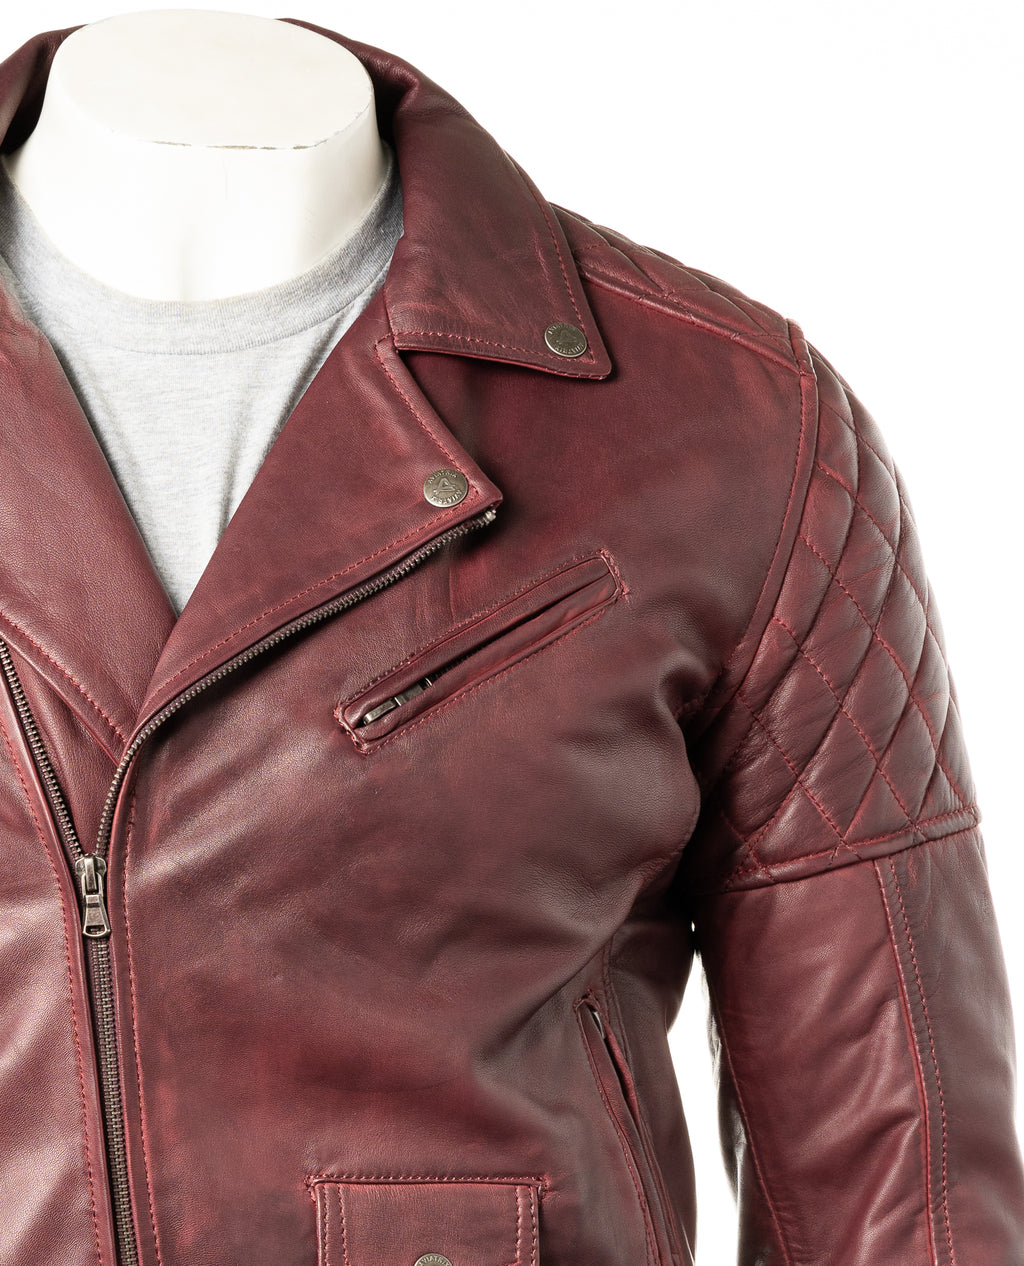 Men's Burgundy Vintage Look Biker Style Leather Jacket: Gaetano